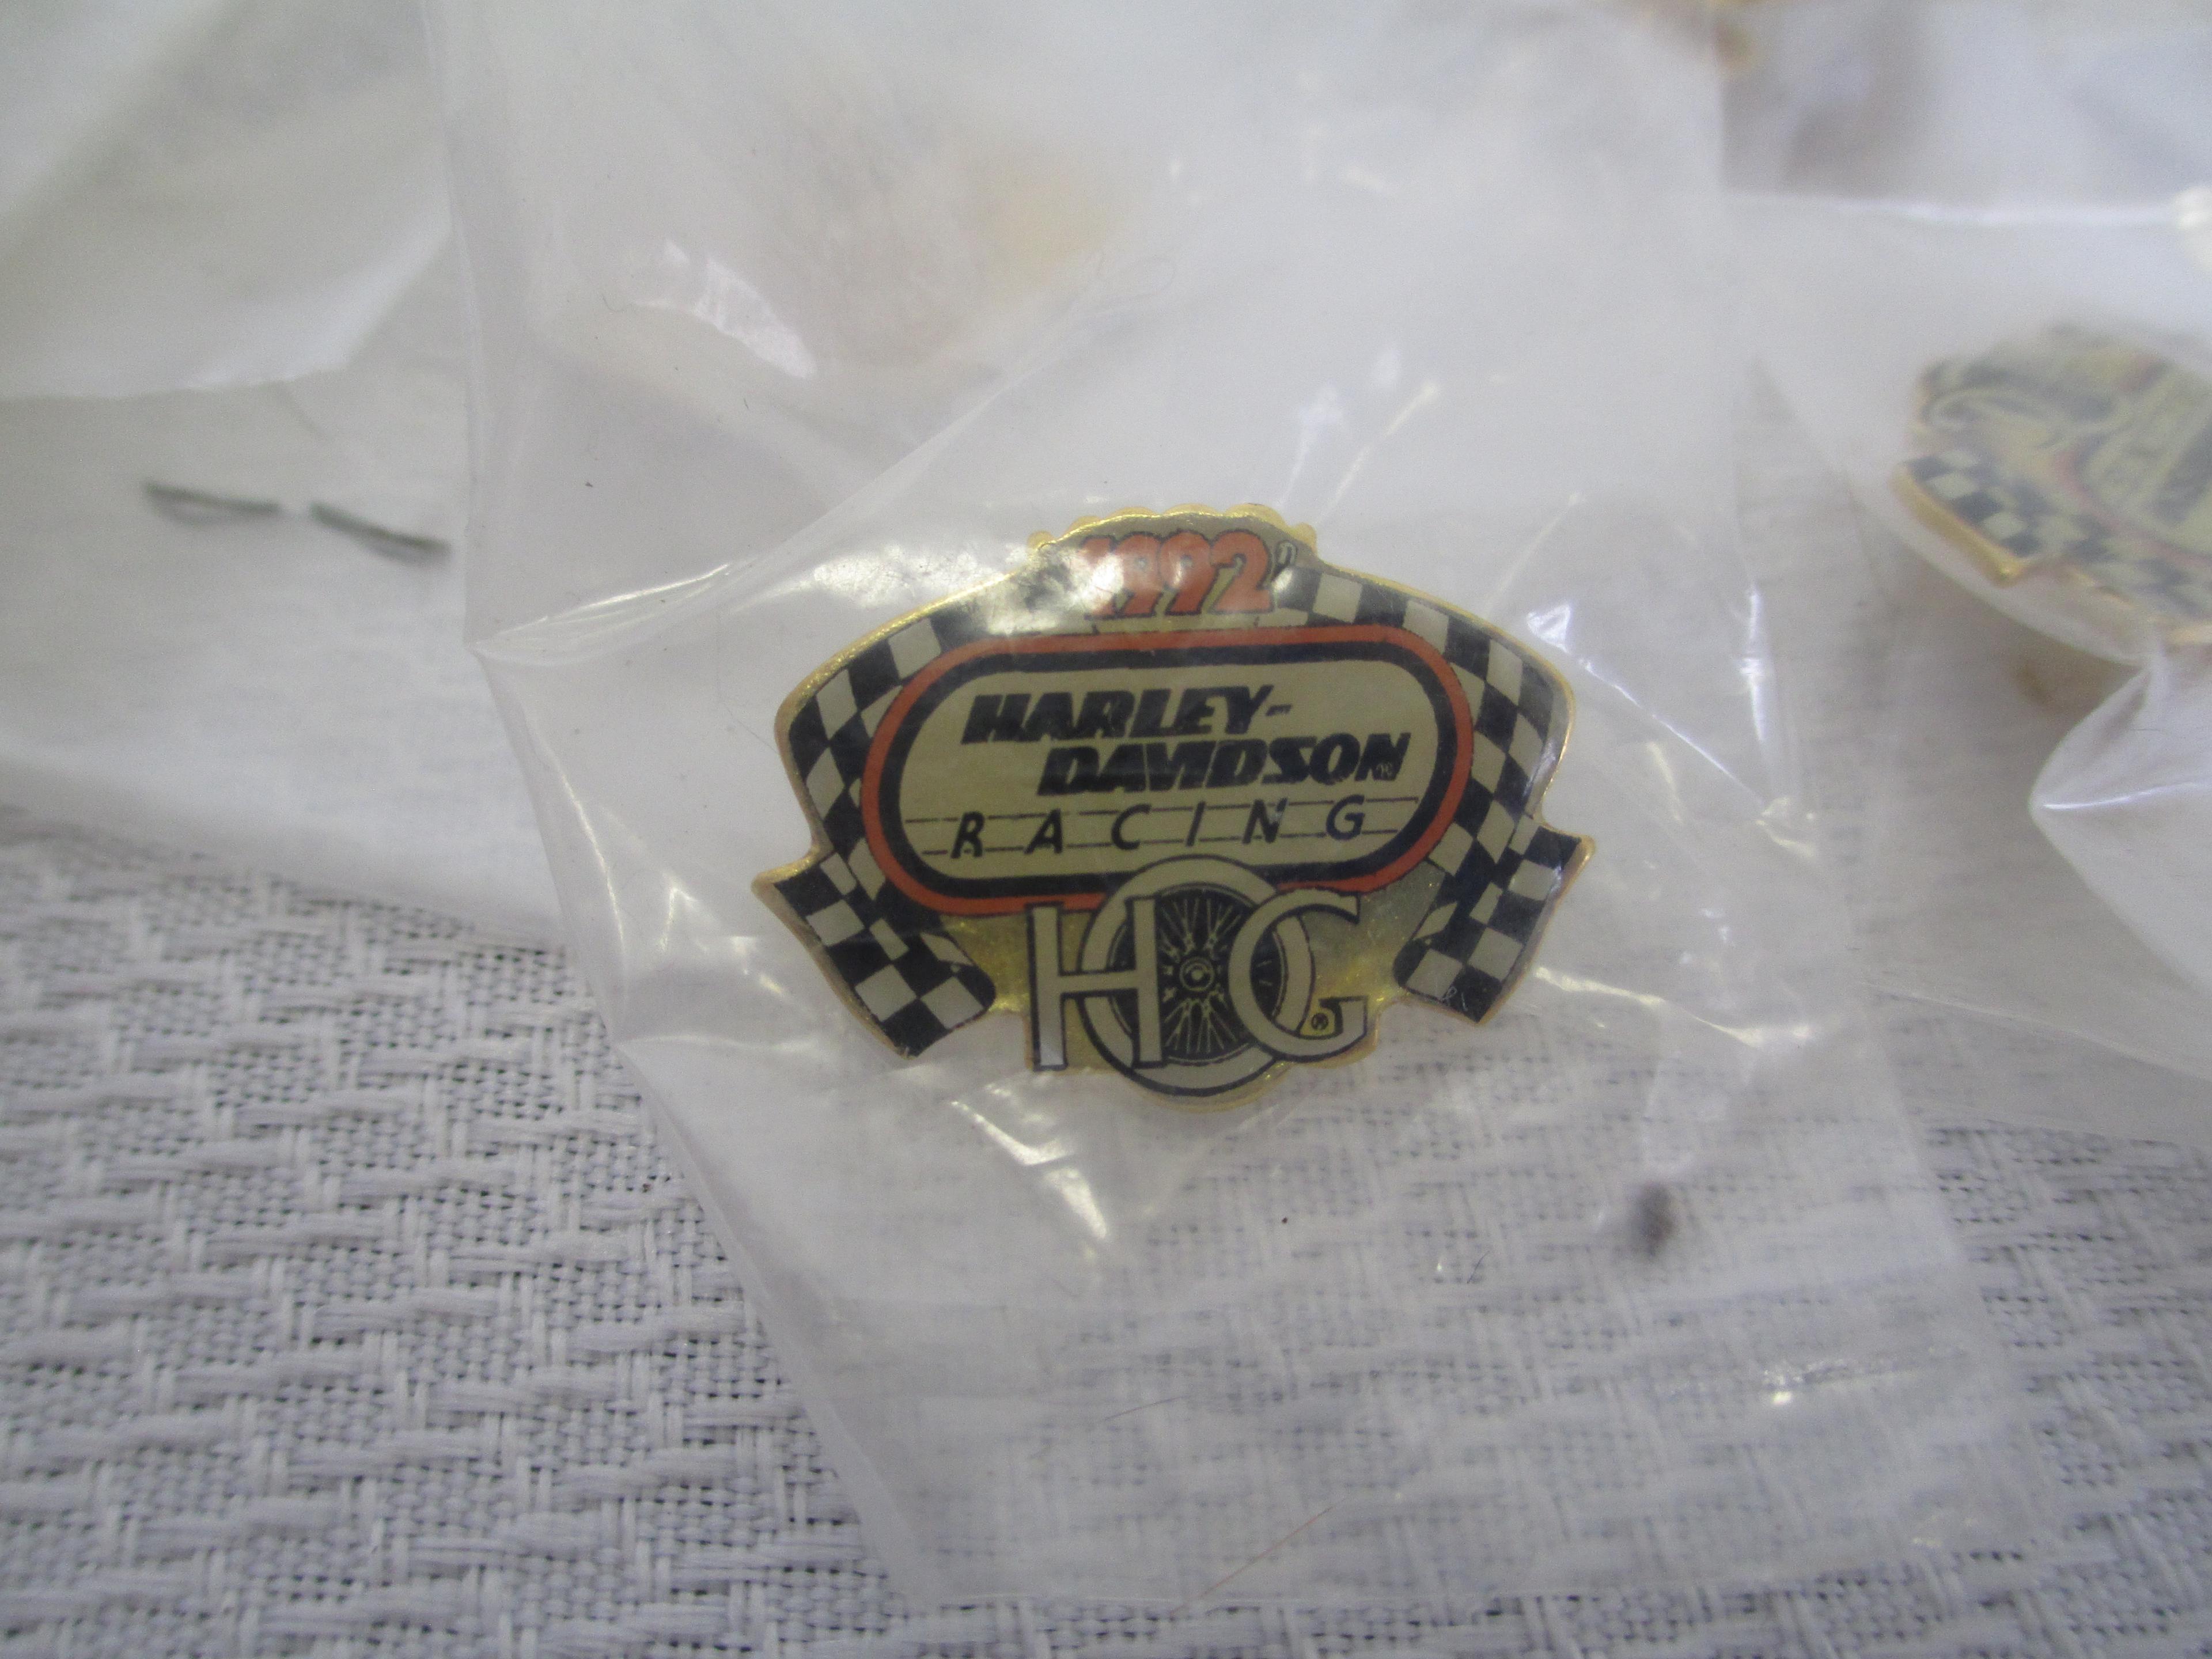 20+ 1992 Harley Davidson Racing Pins